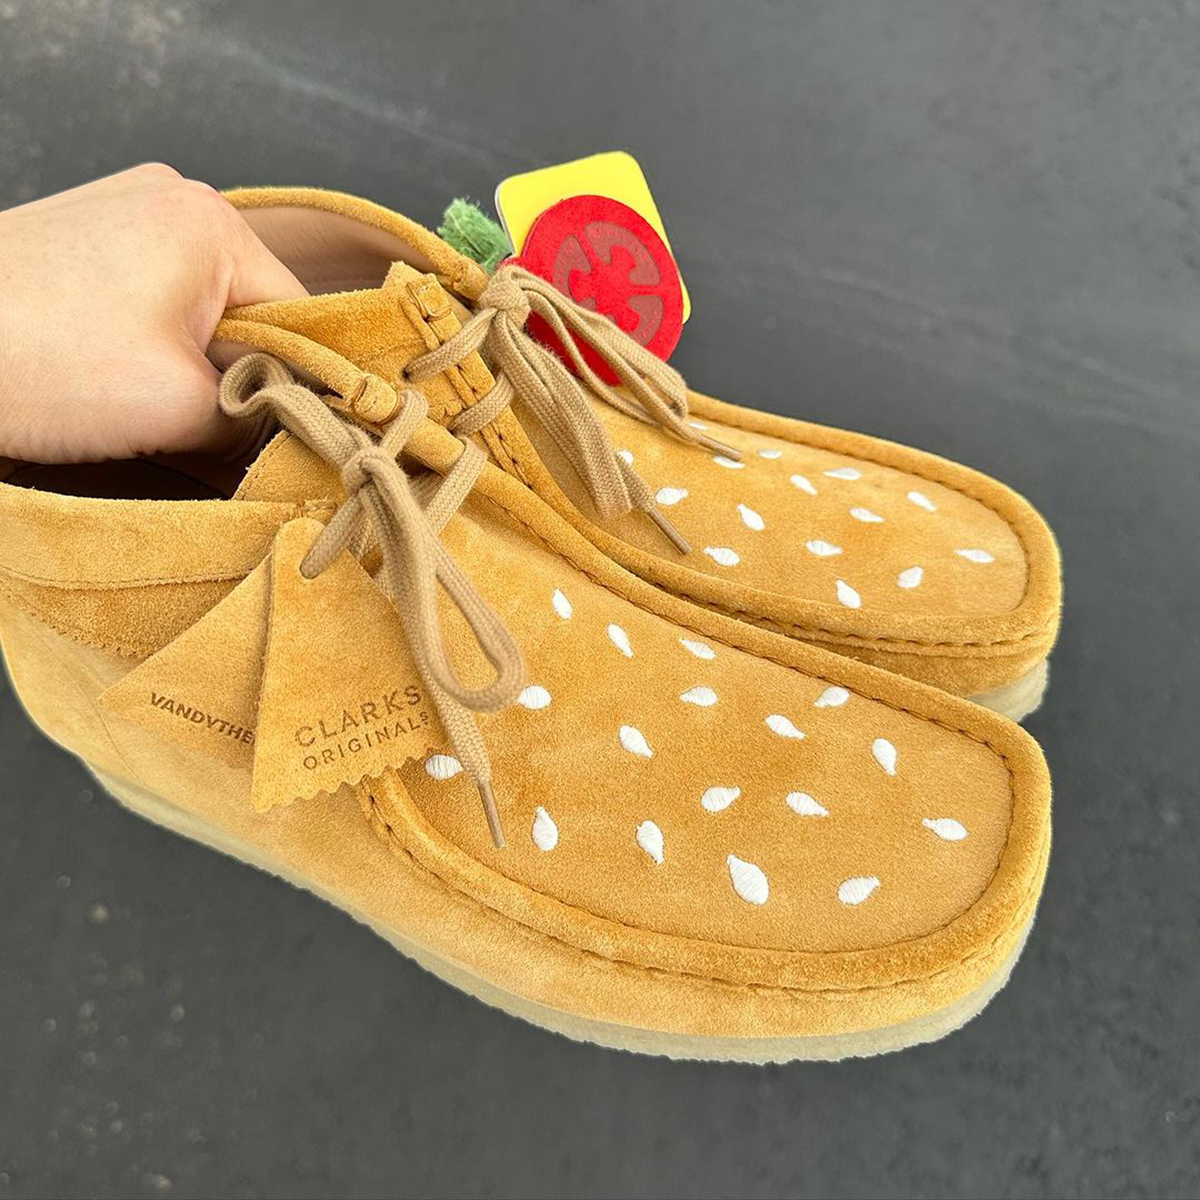 Clarks dévoile une chaussure originale au design évoquant un hamburger